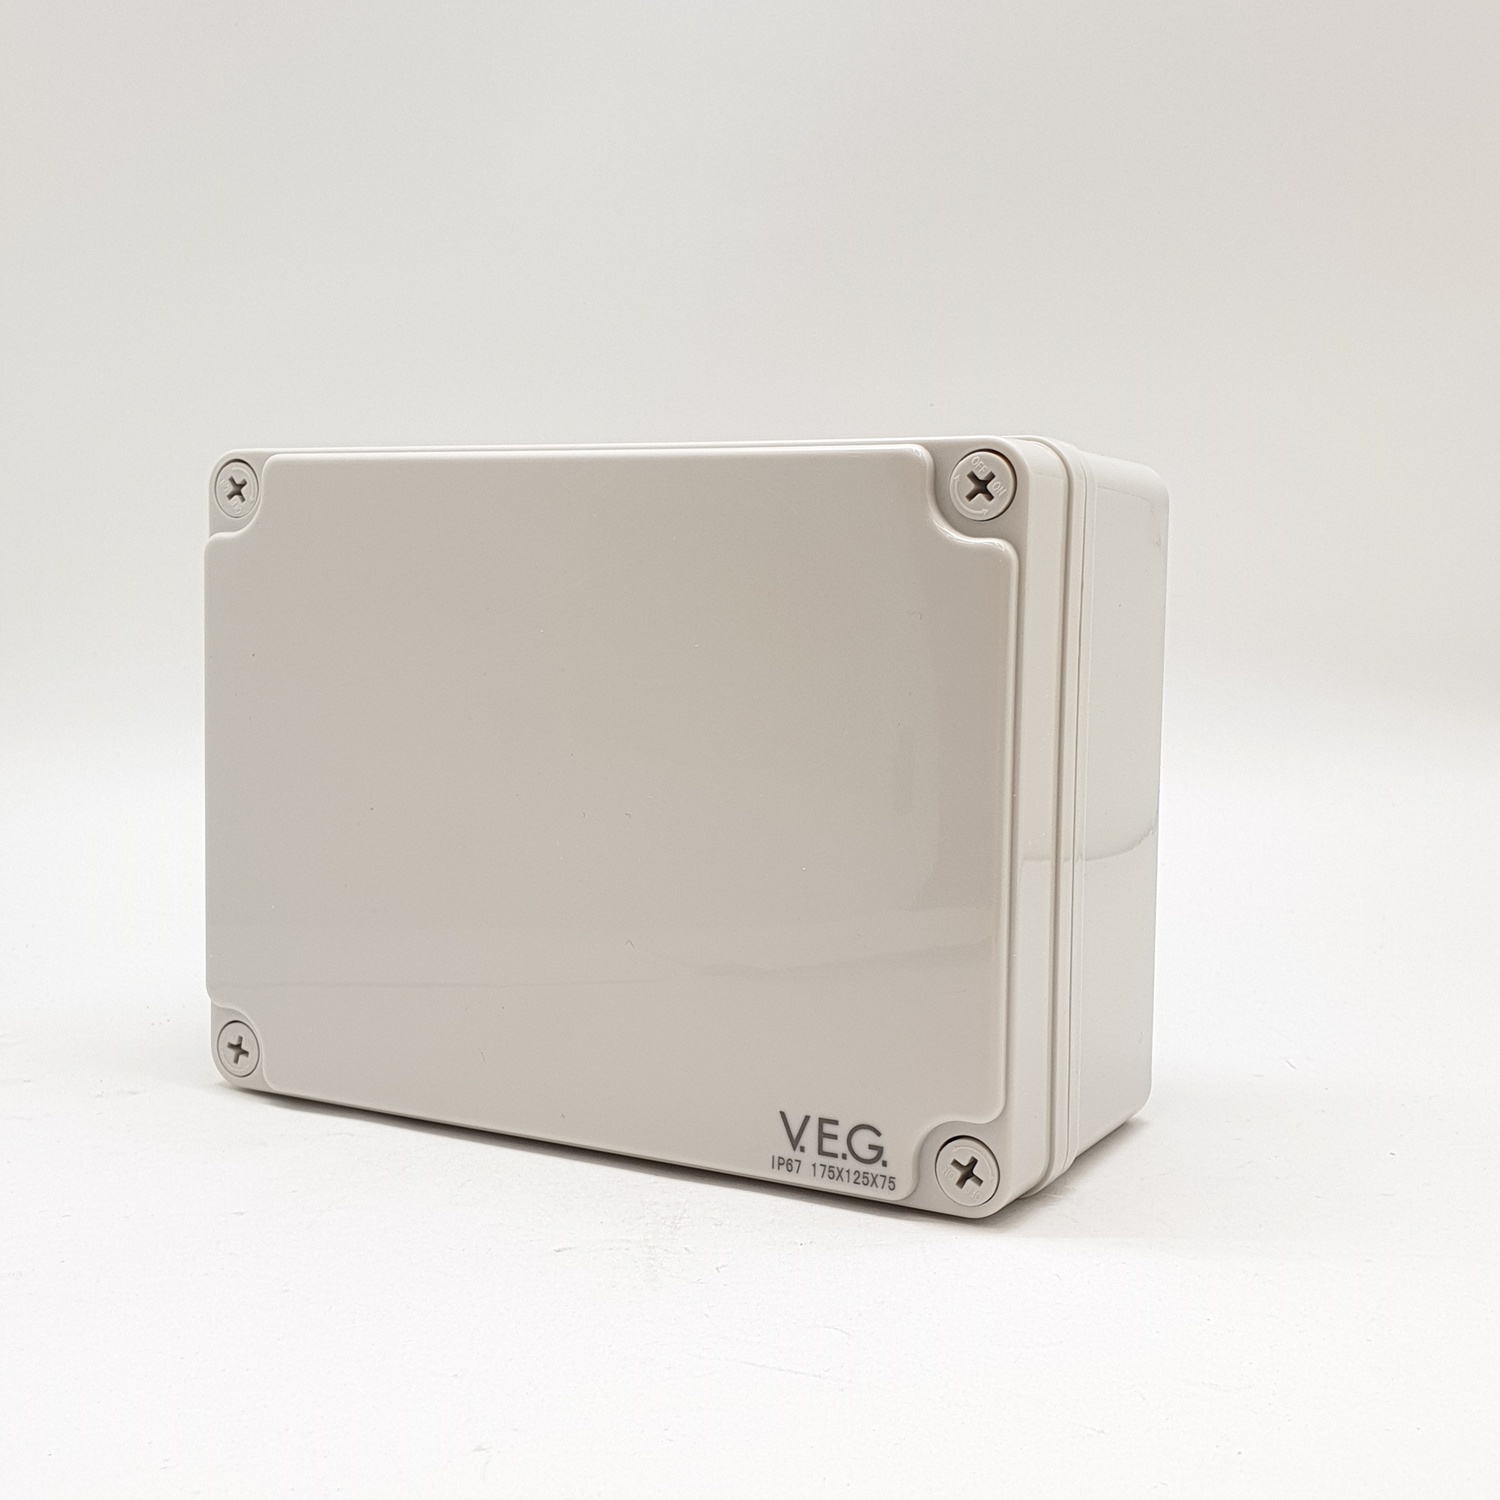 V.E.G. กล่องกันน้ำพลาสติก รุ่น THE-13 175x175x75mm. สีเทา